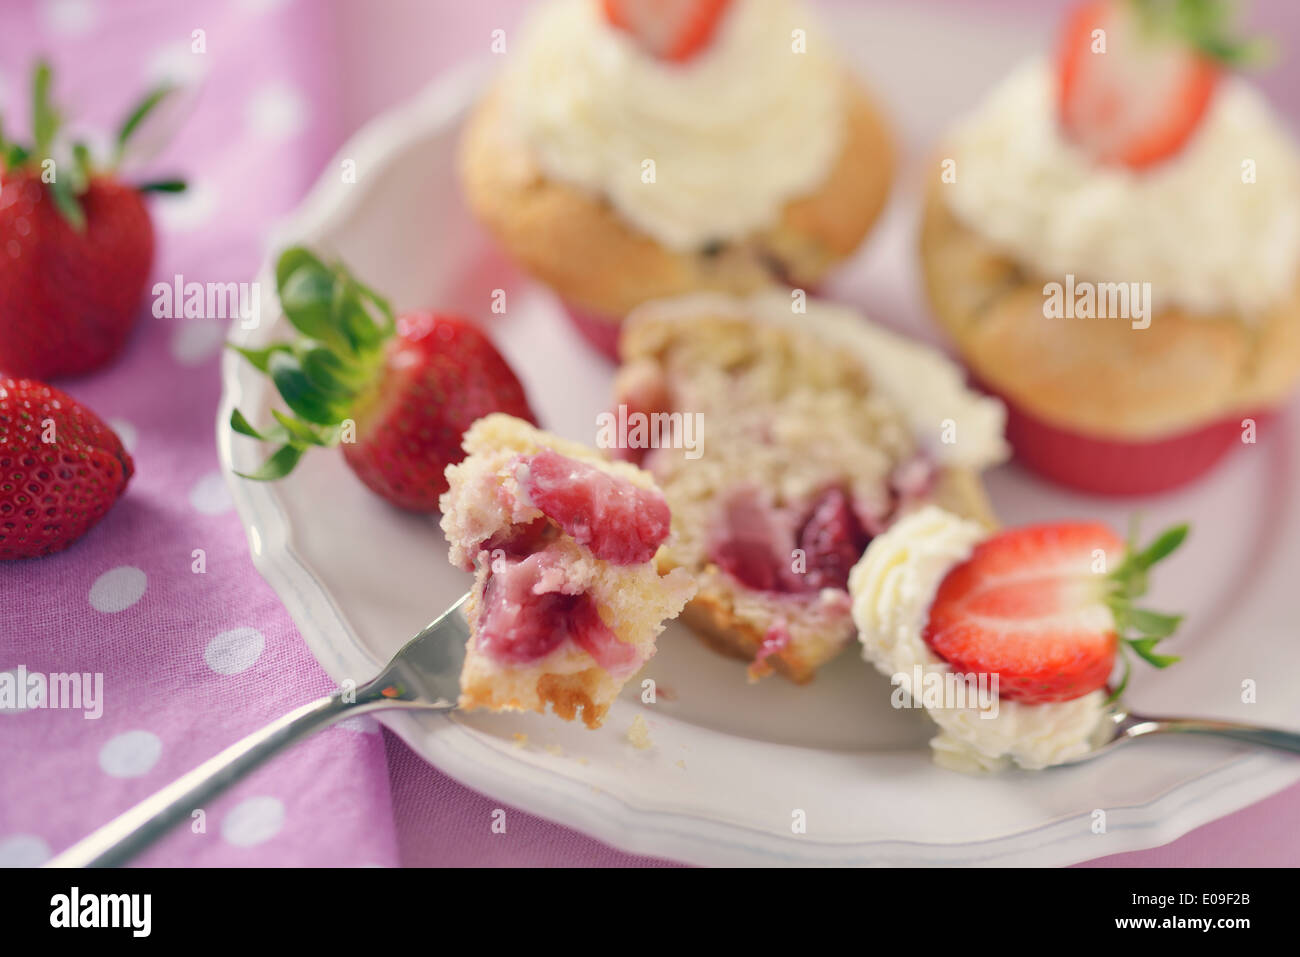 Erdbeer-Muffins mit Mascarpone-Topping auf Platte Stockfoto